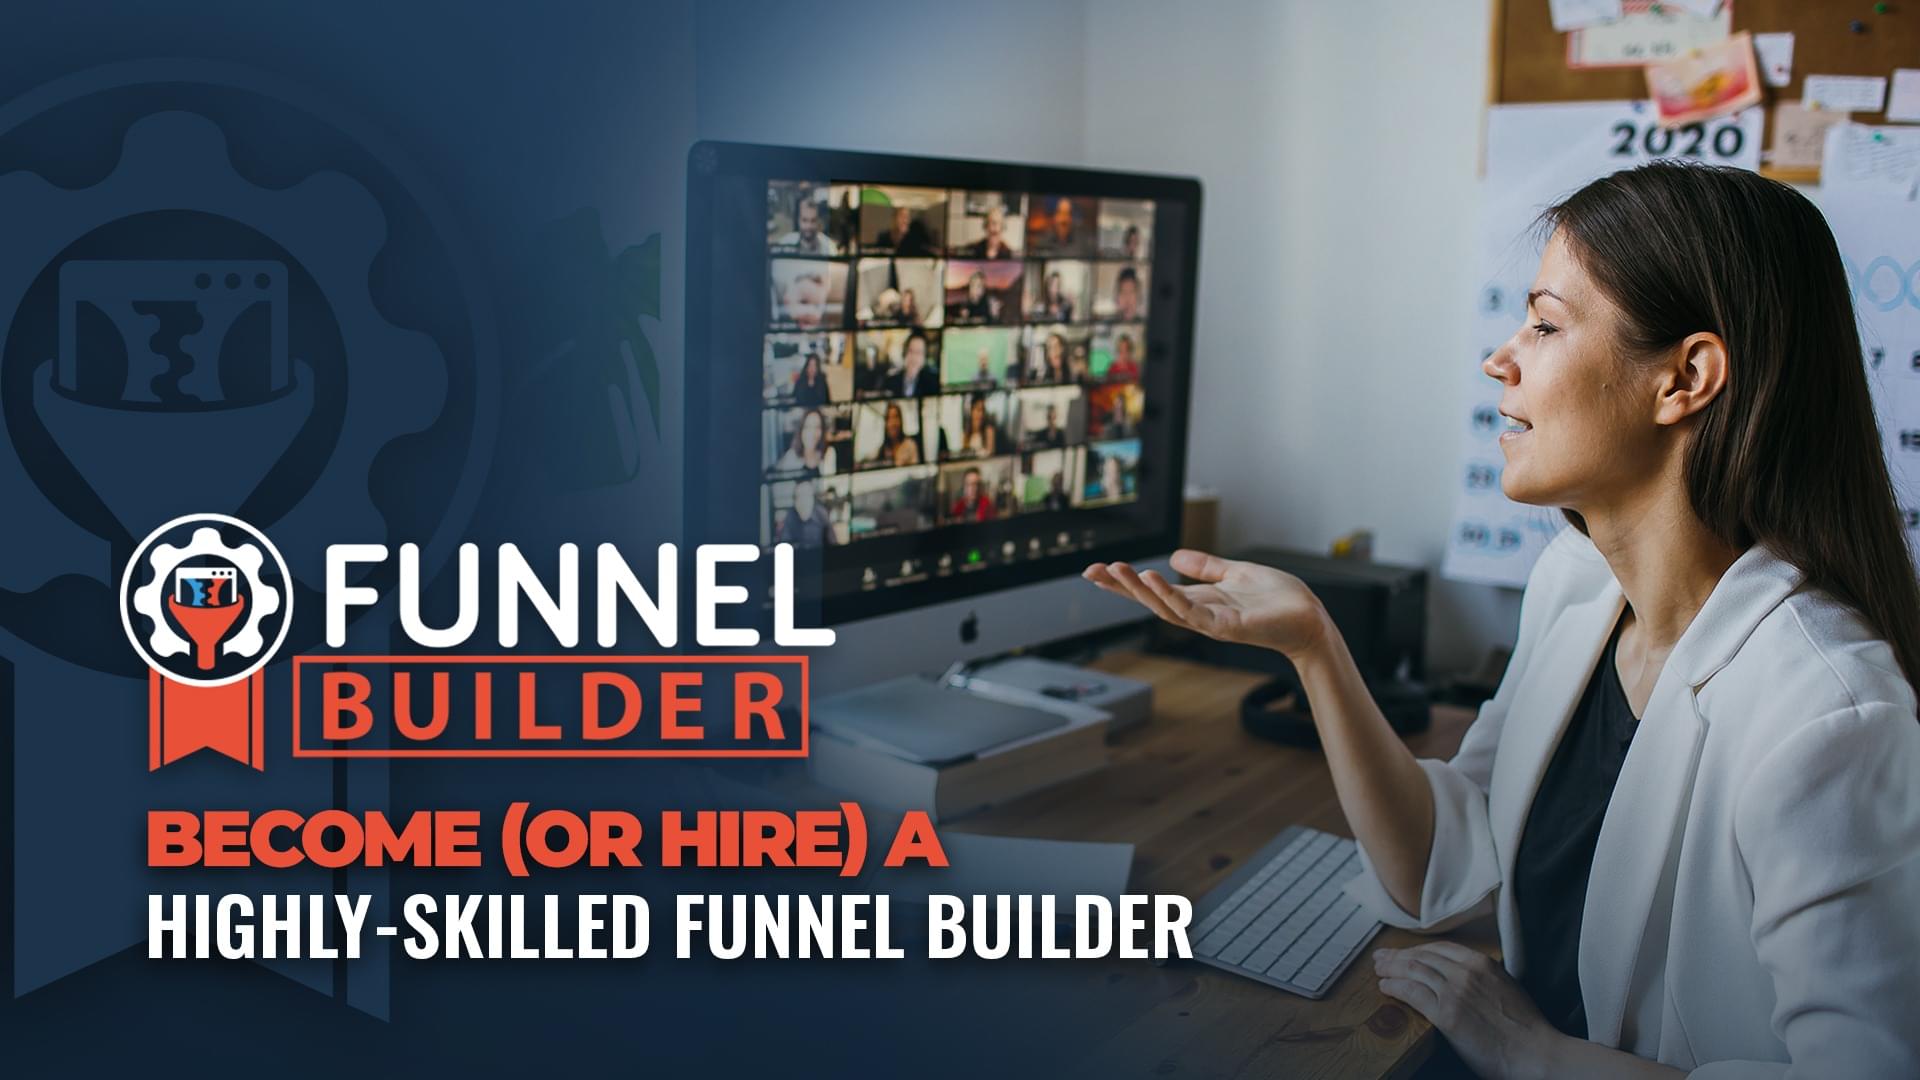 Funnel Builder